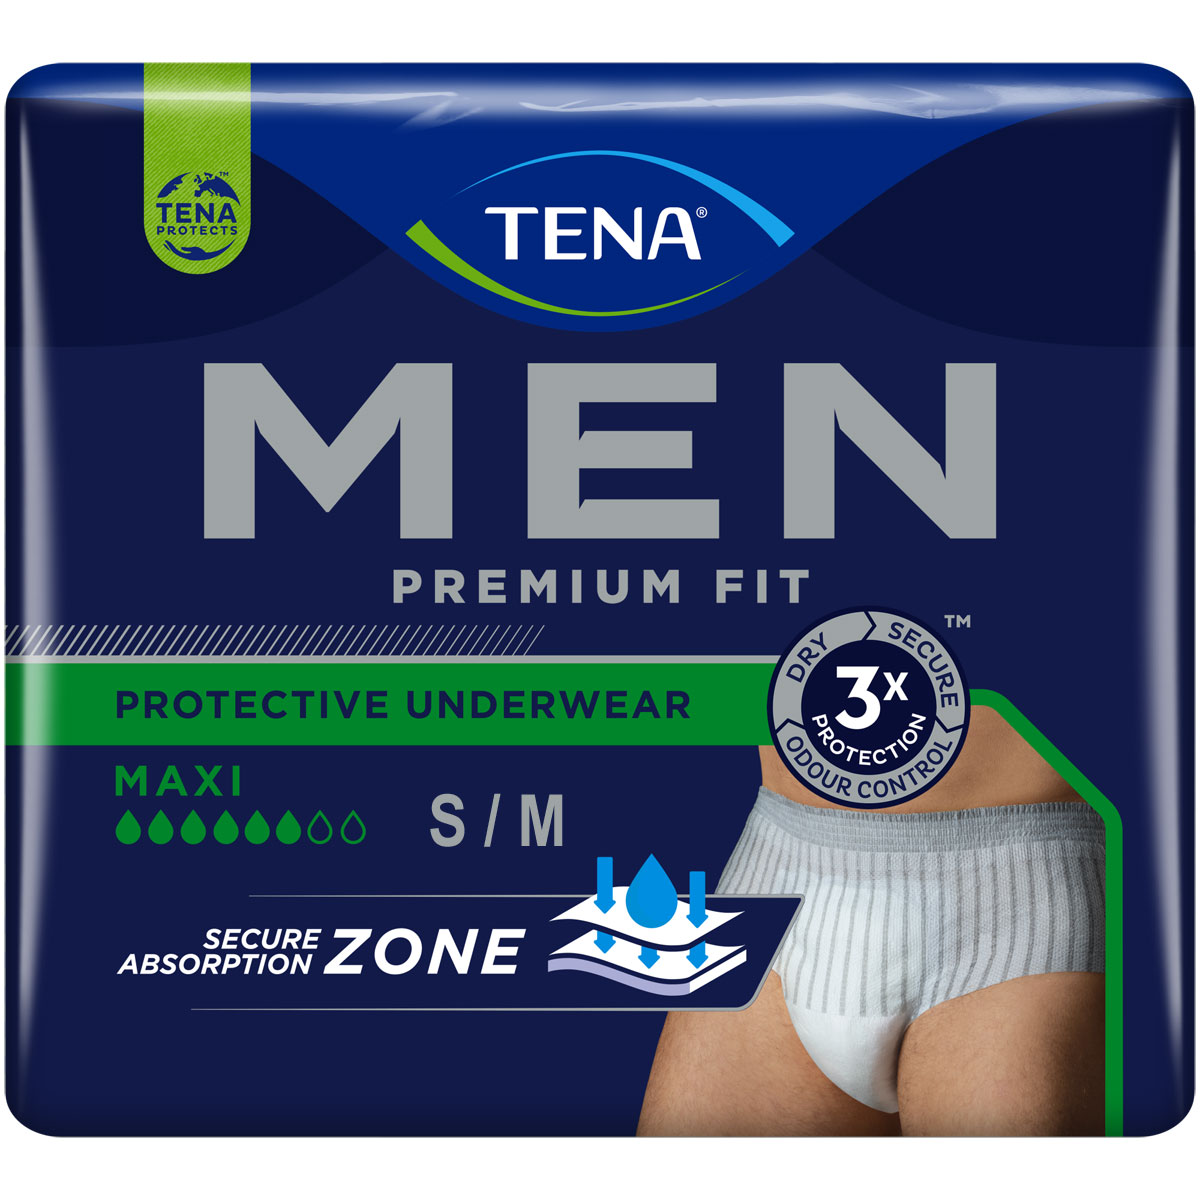 TENA Men Premium Fit - Pants MAXI für Männer Gr. S/M (4x12 St) Vorteilspack